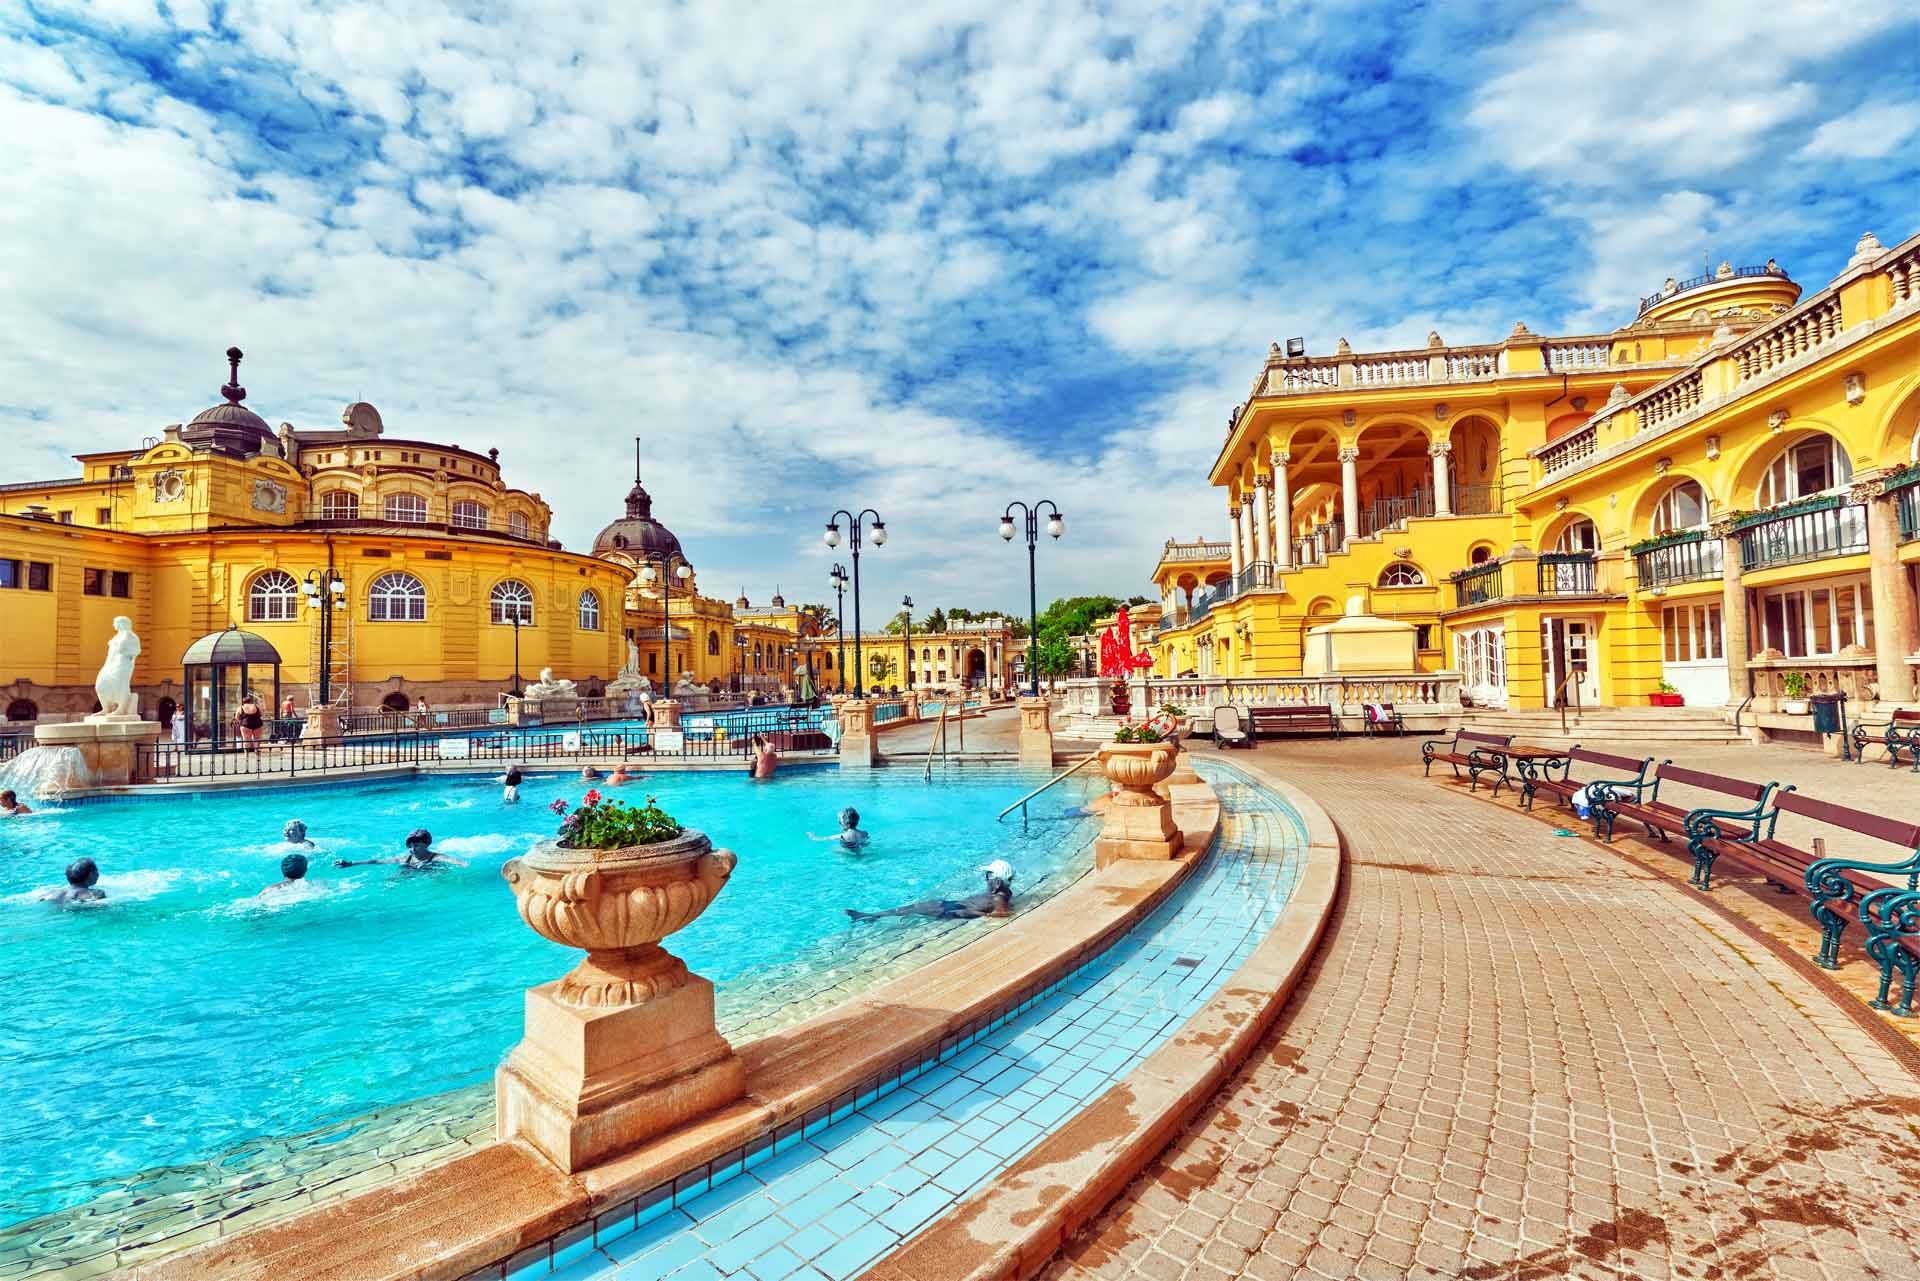 布達佩斯城市公園內的塞切尼溫泉浴場人氣最旺，鵝黃色的宮廷建築內包括各式溫泉池、桑拿池等，洋溢奧圖曼風情。